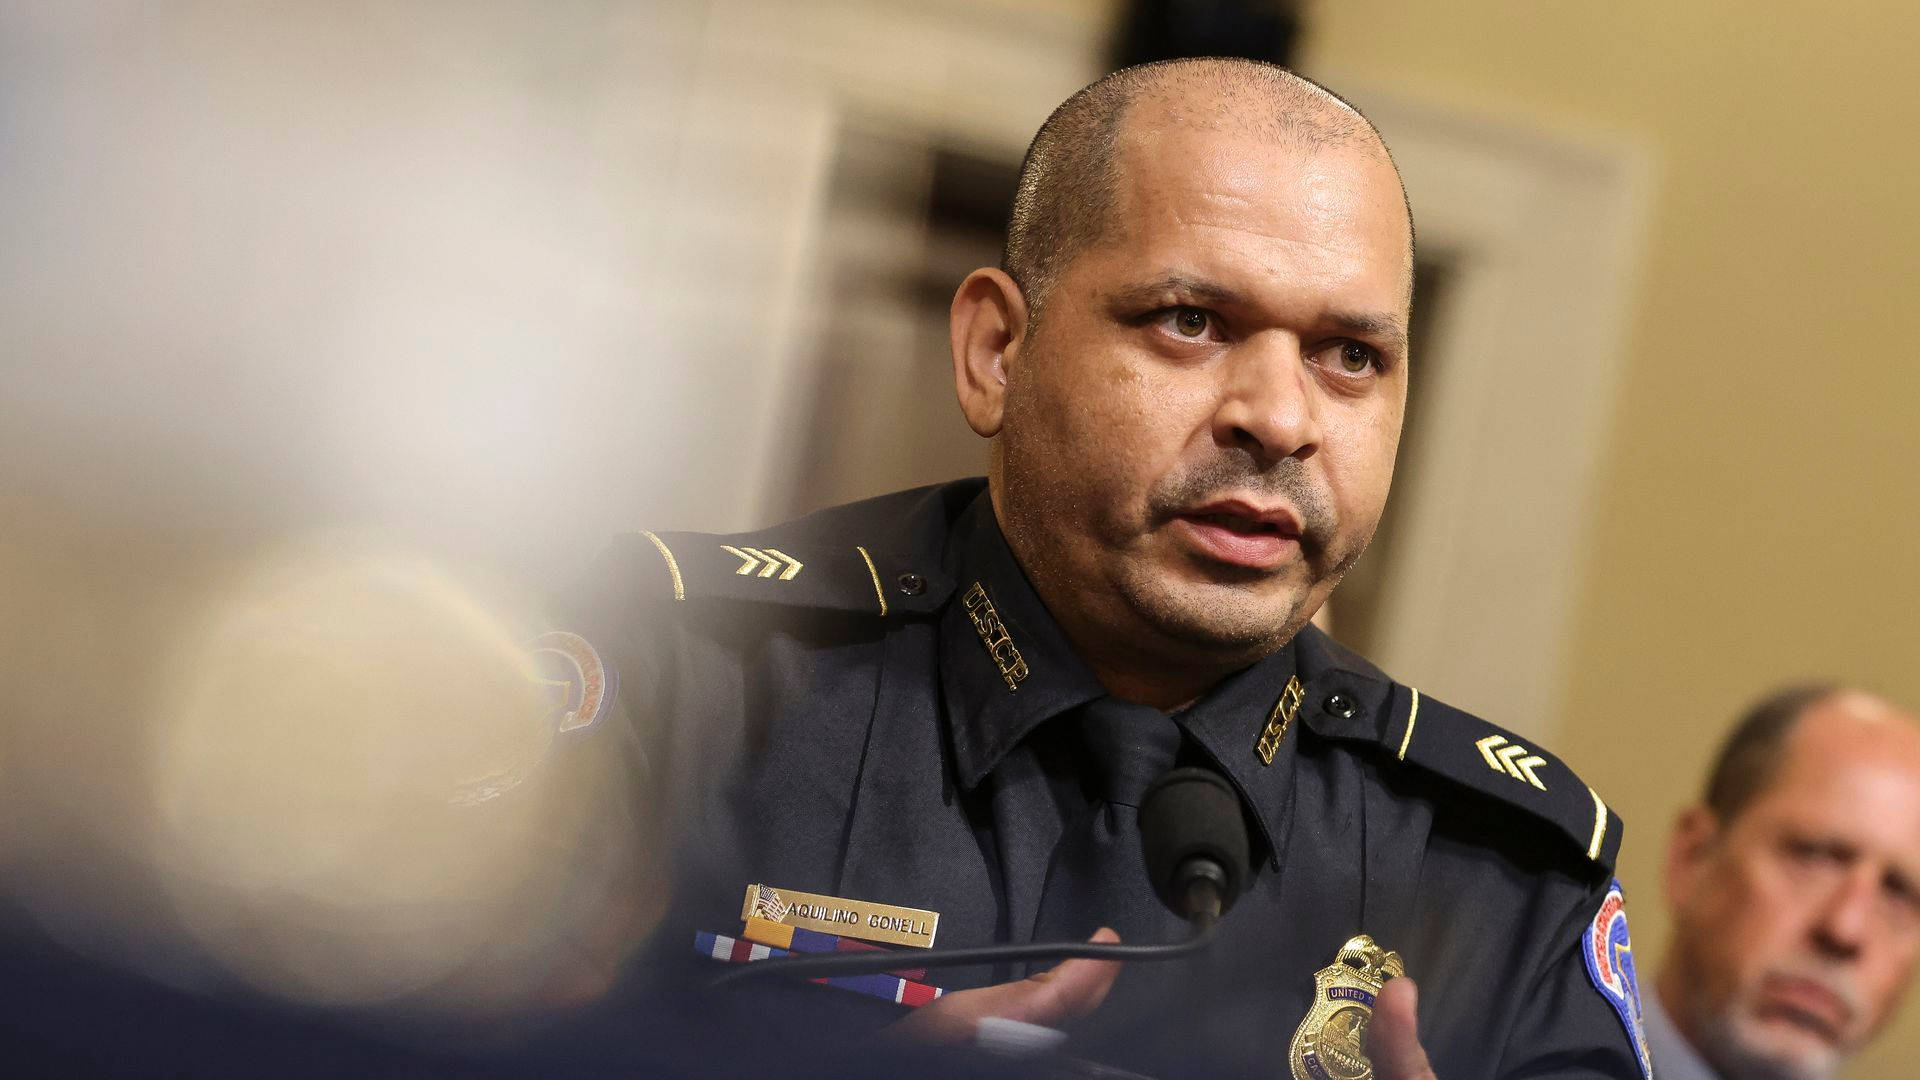 Capitolets Politibetjent Træder Af Som Følge Af Traume Efter Optøjer Wallpaper